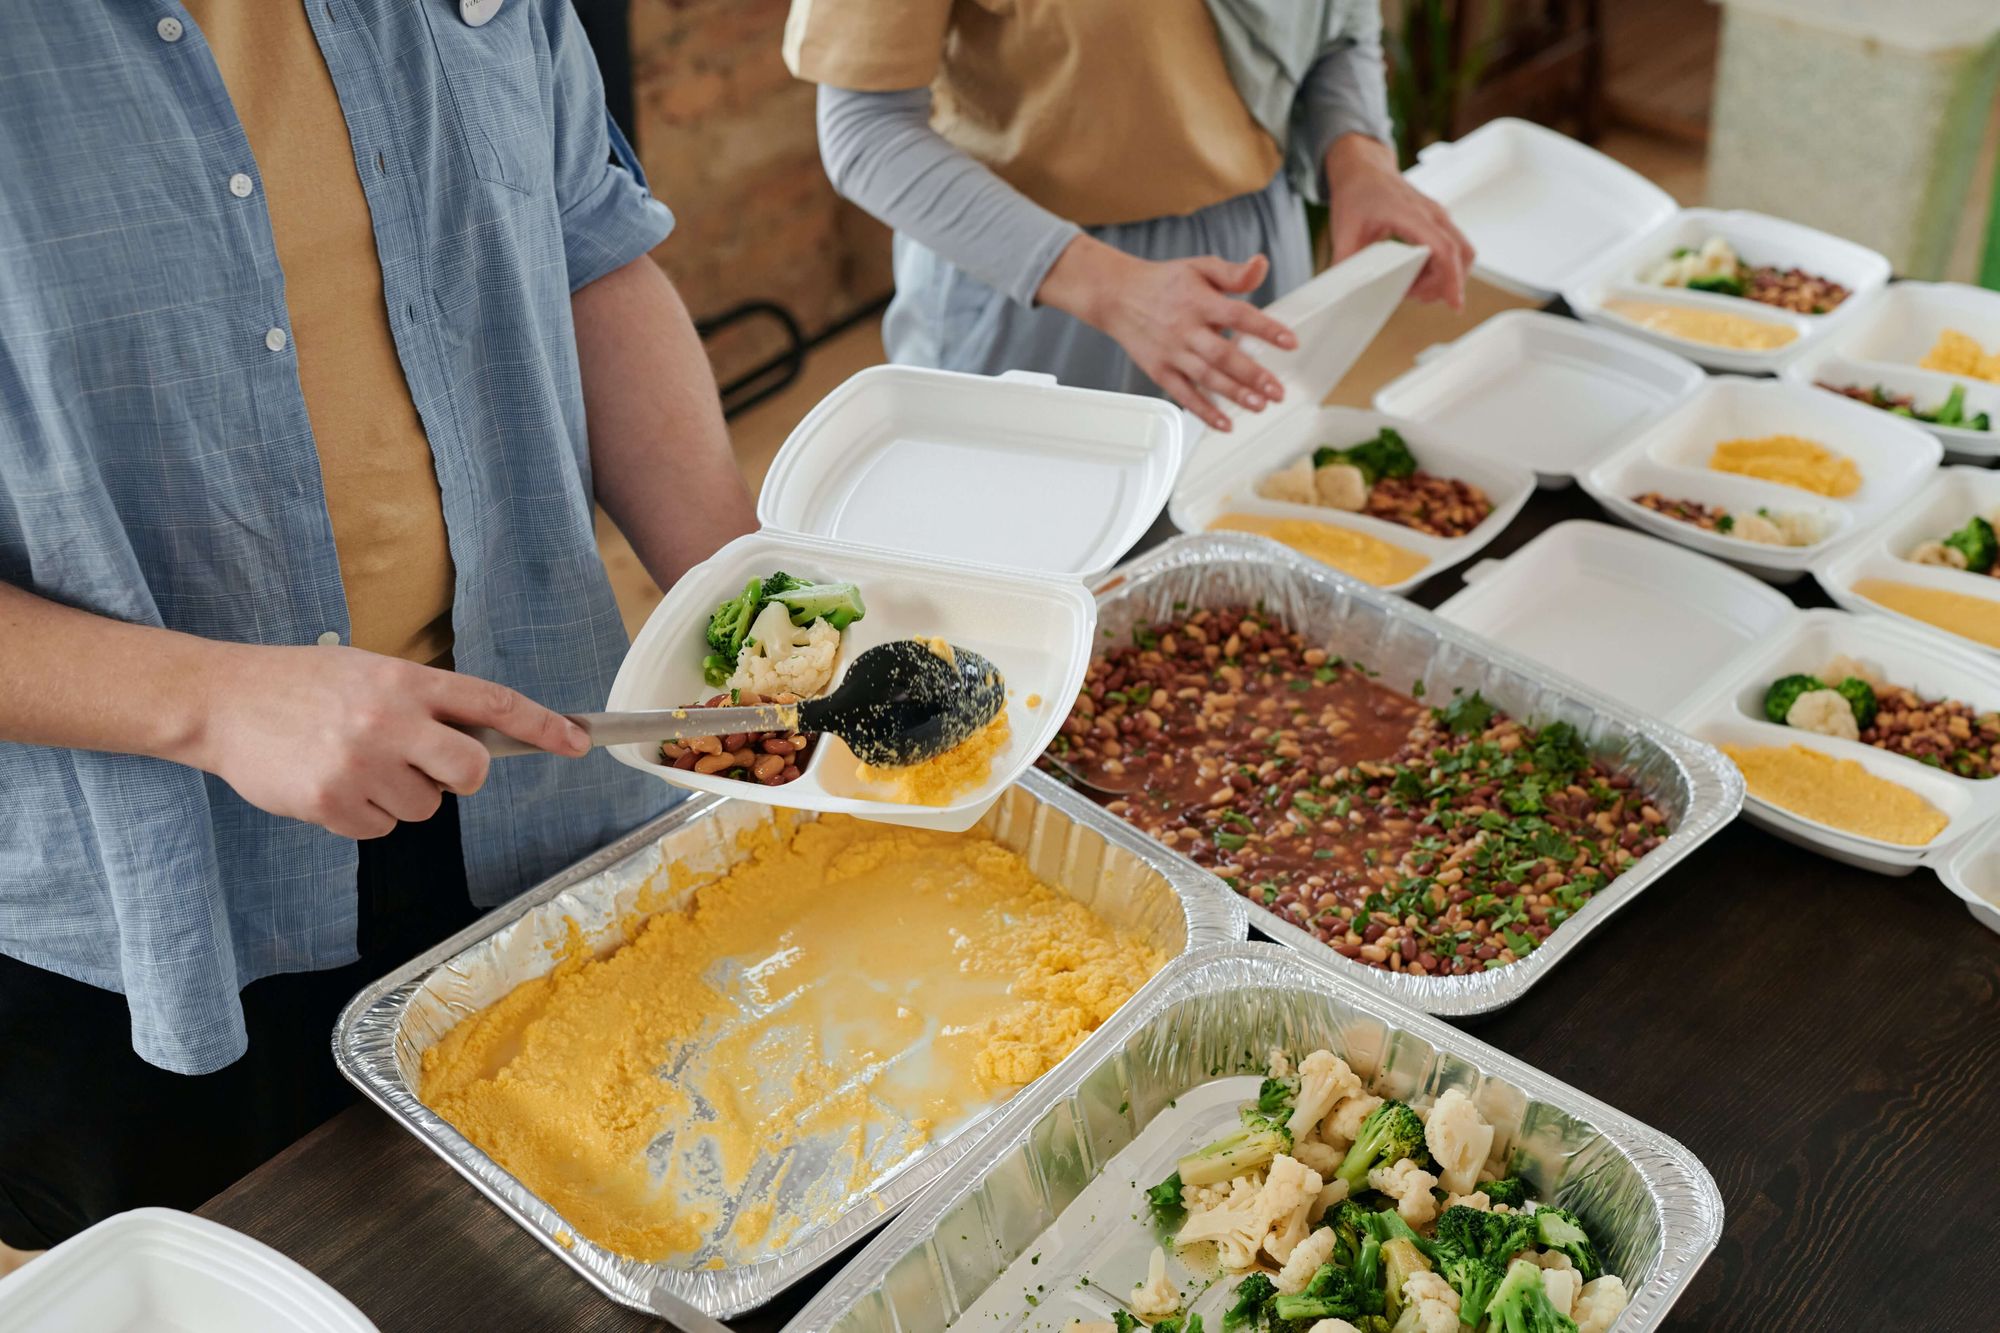 A imagem mostra duas pessoas próximas a uma mesa onde há diversos recipientes descartáveis com alimentos preparados. Elas montam marmitas de isopor com os alimentos.